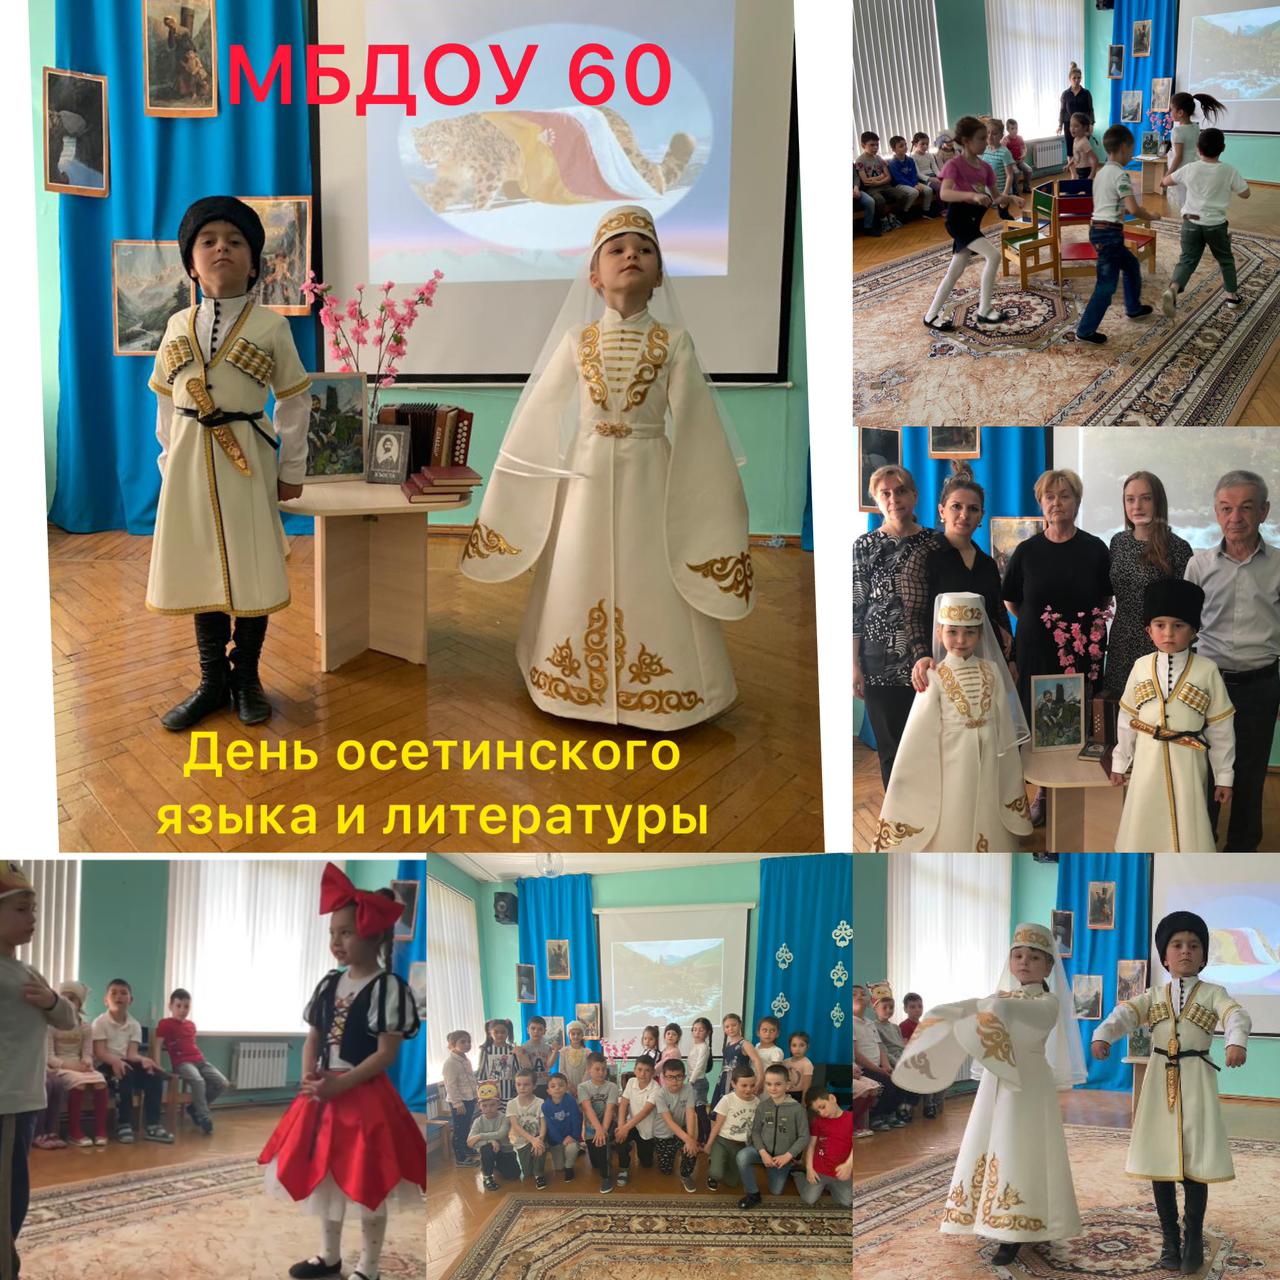 МБДОУ 60 отмечает День осетинского языка и литературы